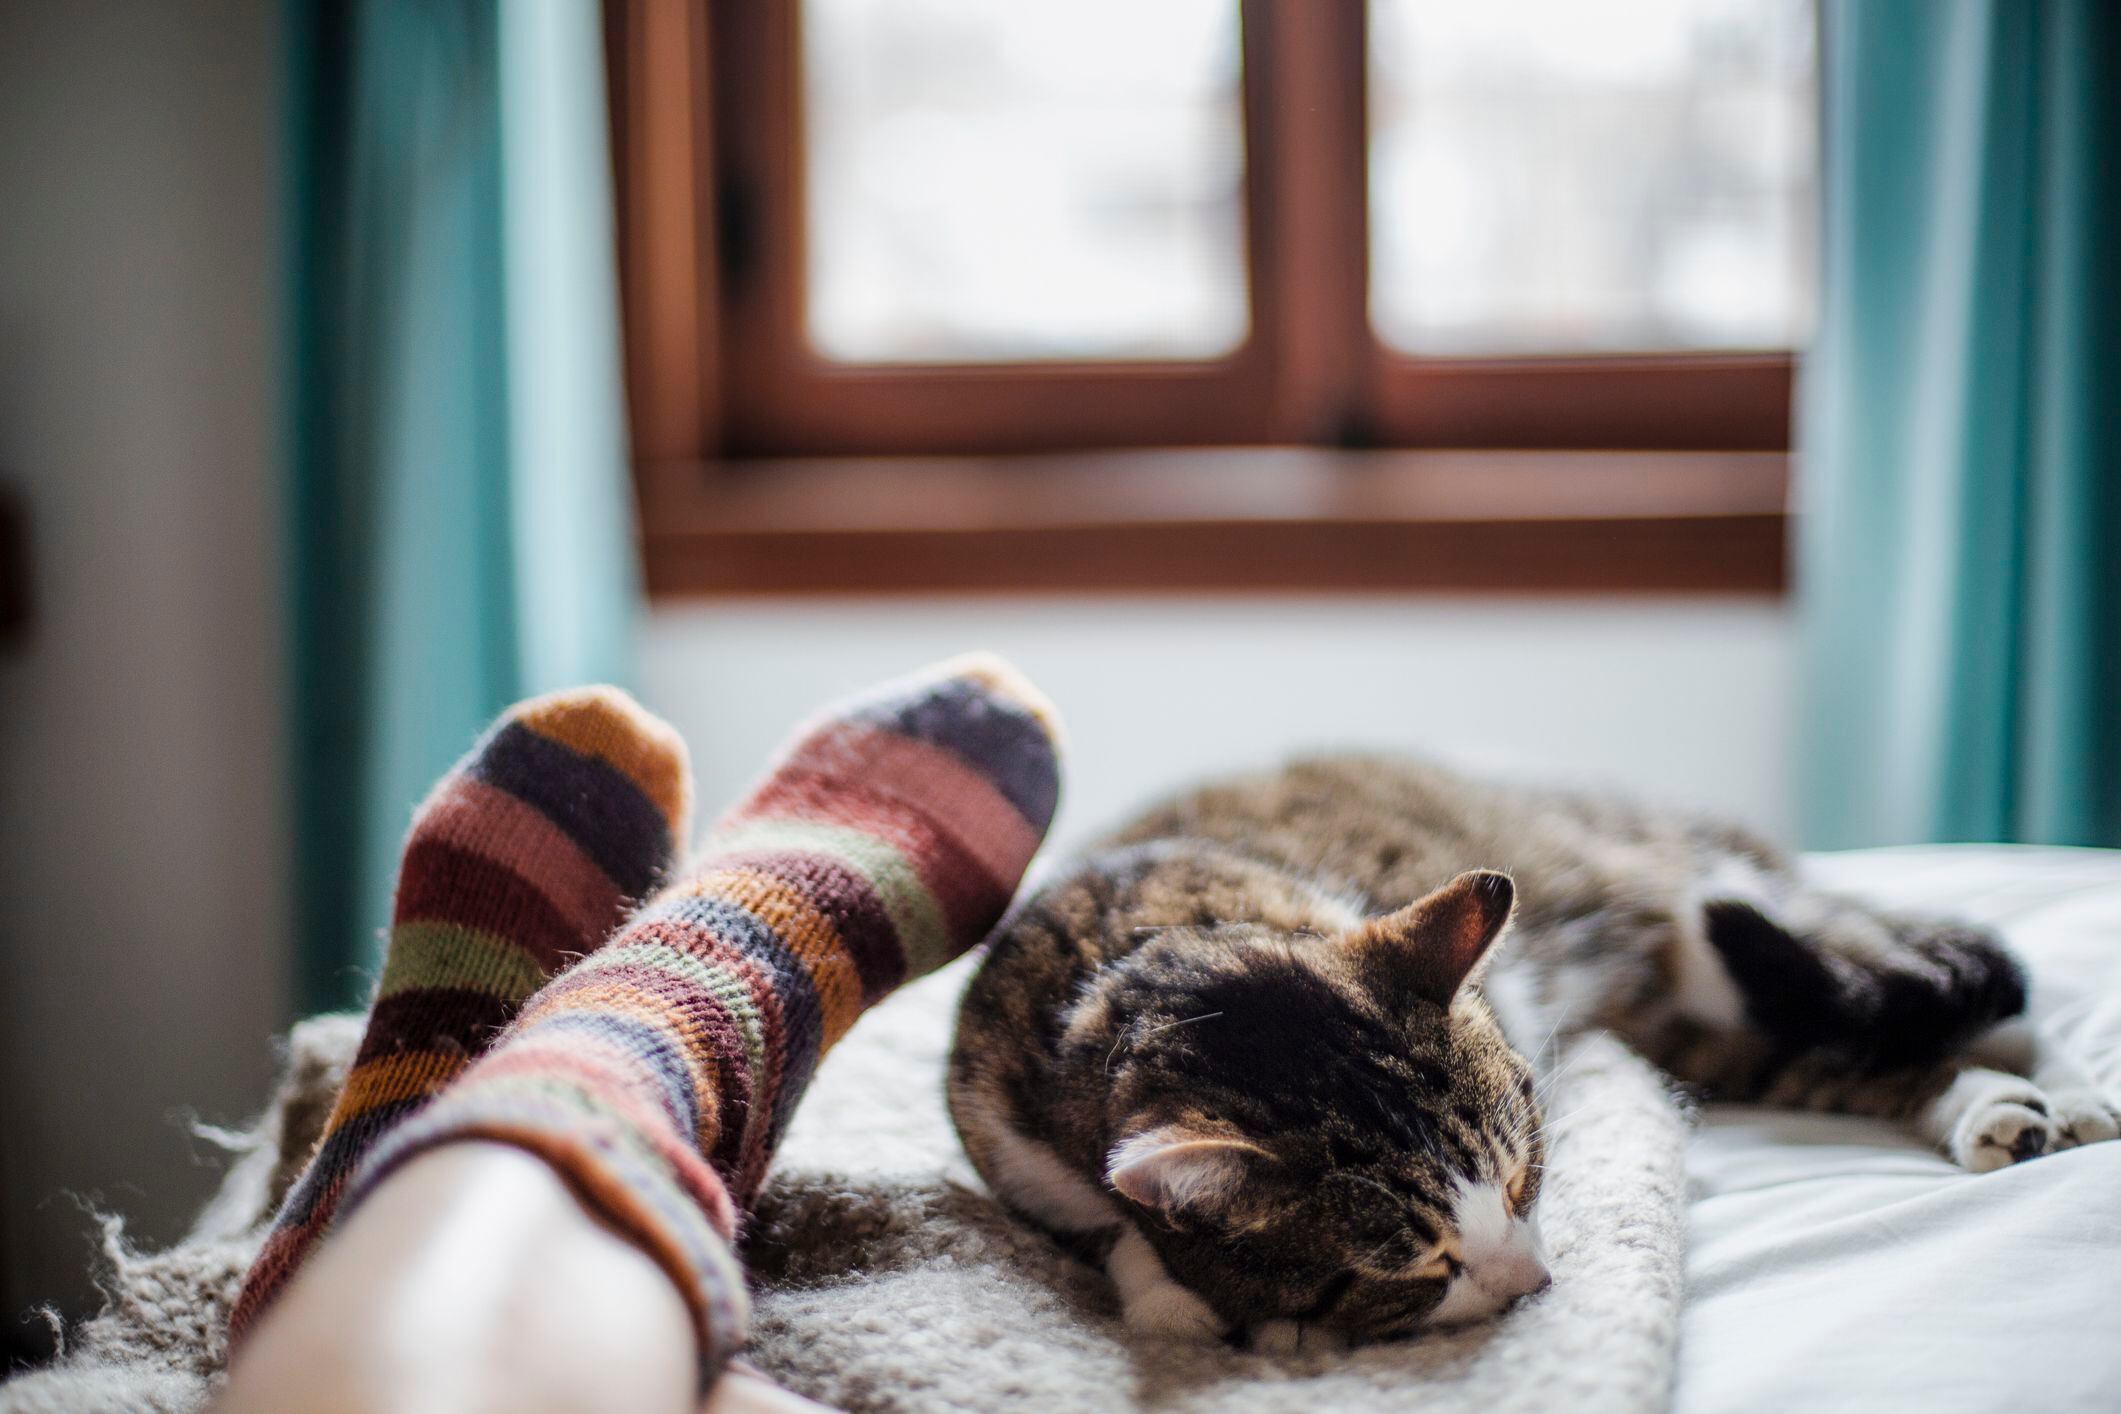 Un nuevo estudio científico revela cómo los gatos interpretan y responden a las distintas energías presentes en nuestras casas.